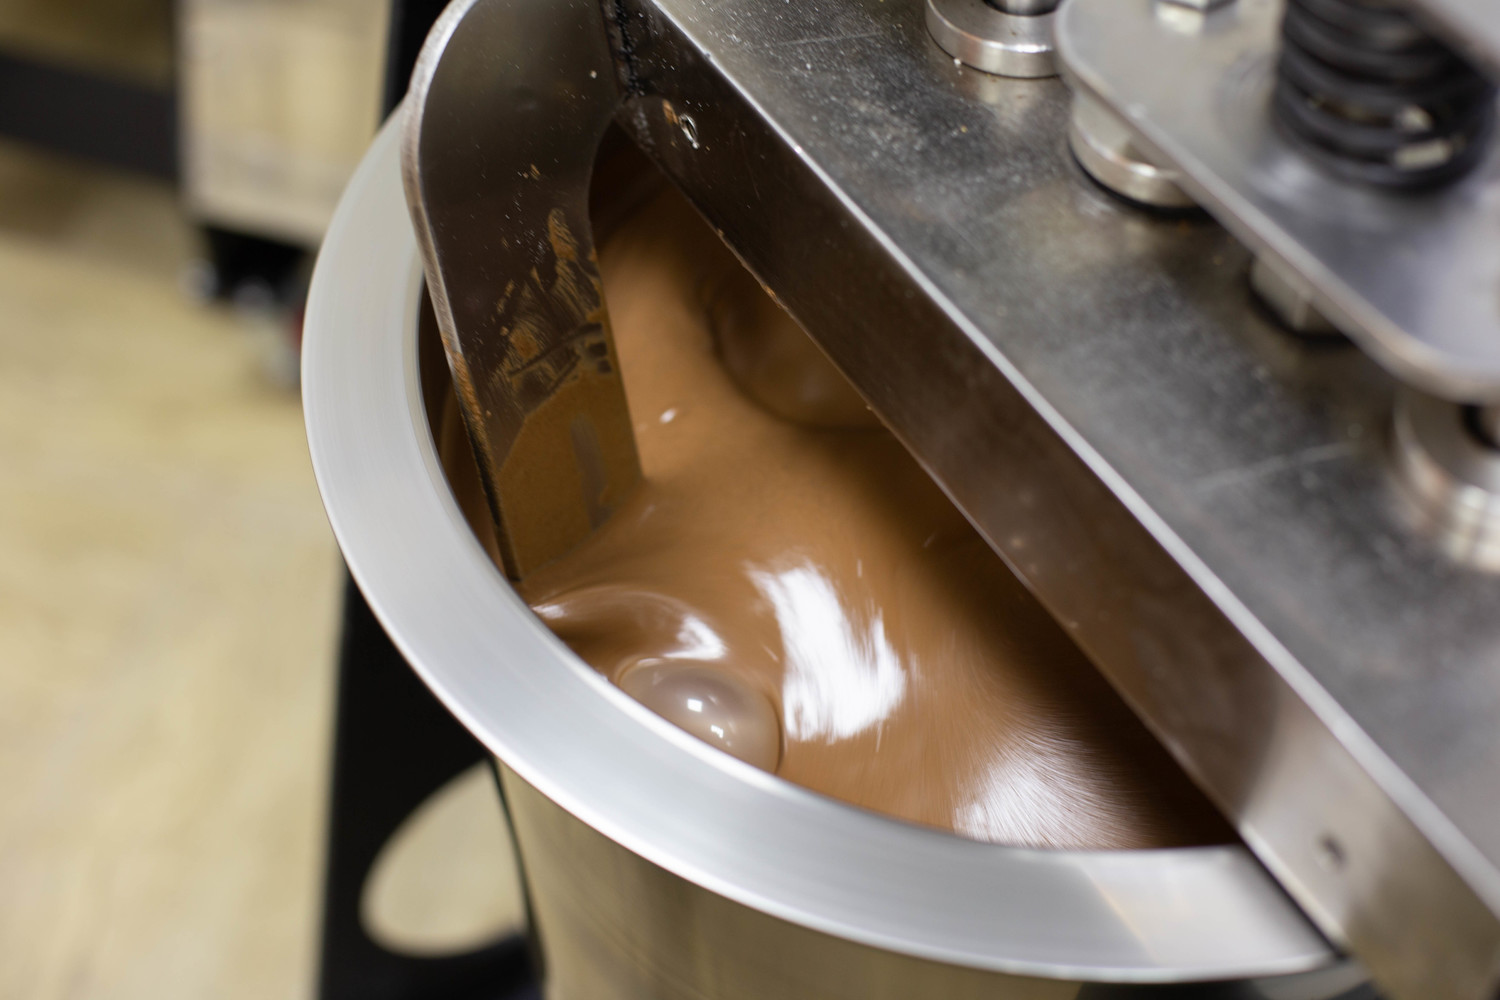 Как готовится самый настоящий, как в Швейцарии, хабаровский шоколад «Амурский бульвар»: фото 